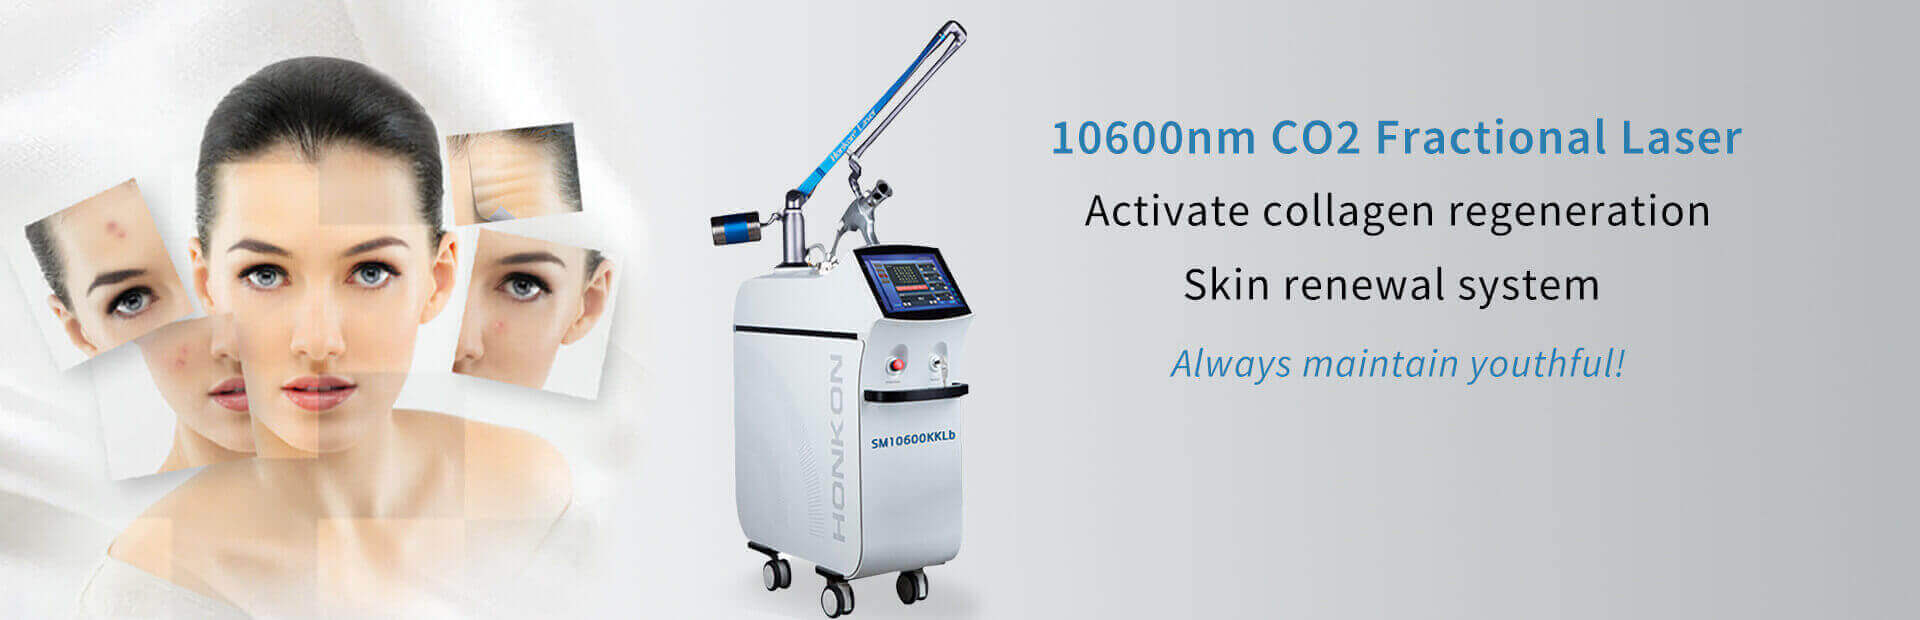 SM10600KKlb estiramiento vaginal 10600nm CO2 láser fraccional estrías/eliminación de cicatrices máquina de rejuvenecimiento de la piel antiarrugas